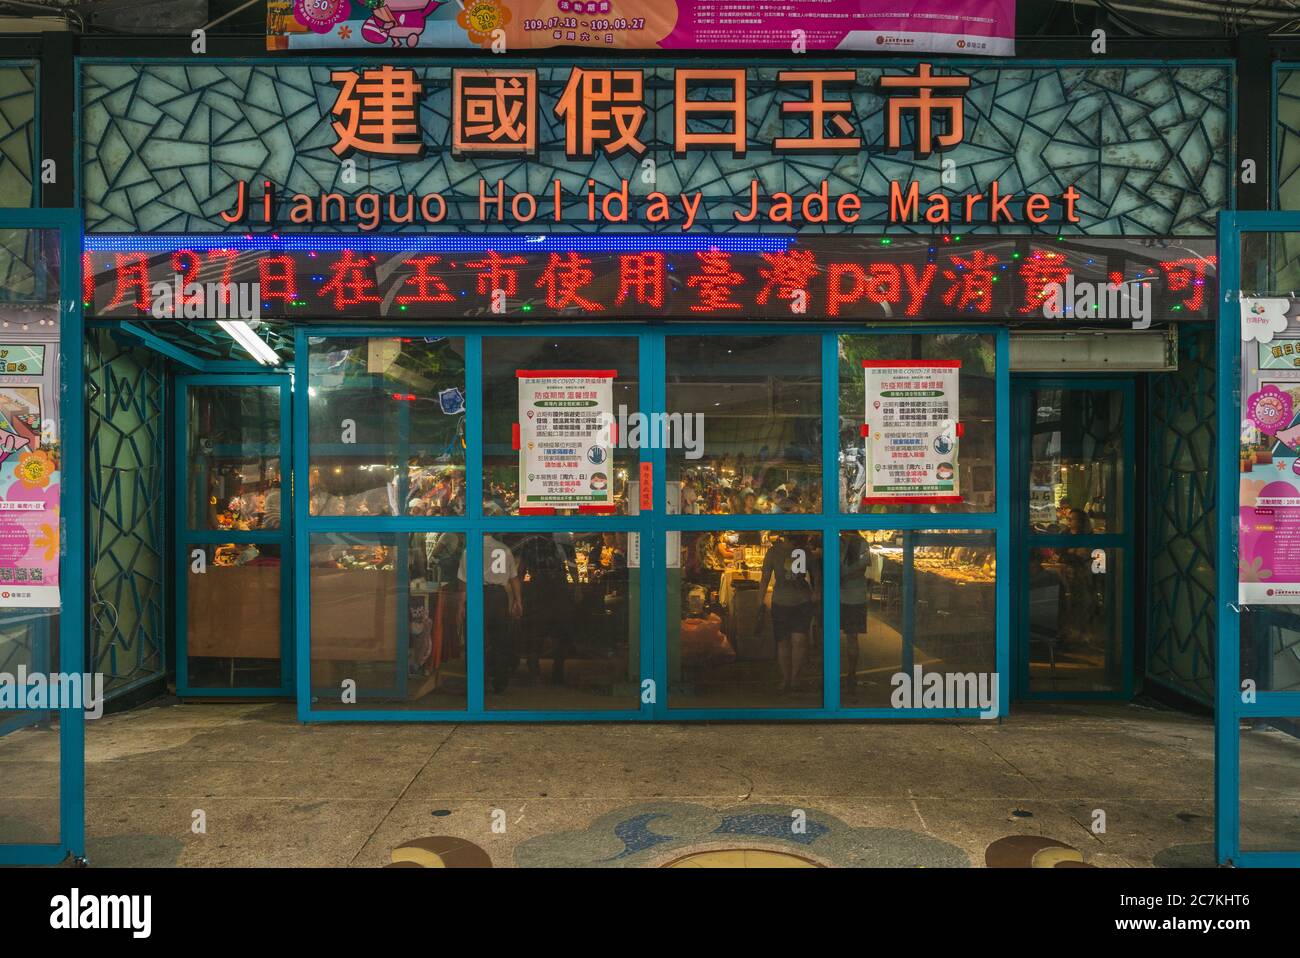 18 juillet 2020: Le marché de jade de vacances de Jianguo, sous l'autoroute surélevée de Jianguo dans la ville de Taipei, Taiwan, est le plus grand marché de vente en gros de jade de Taiwan, a Banque D'Images